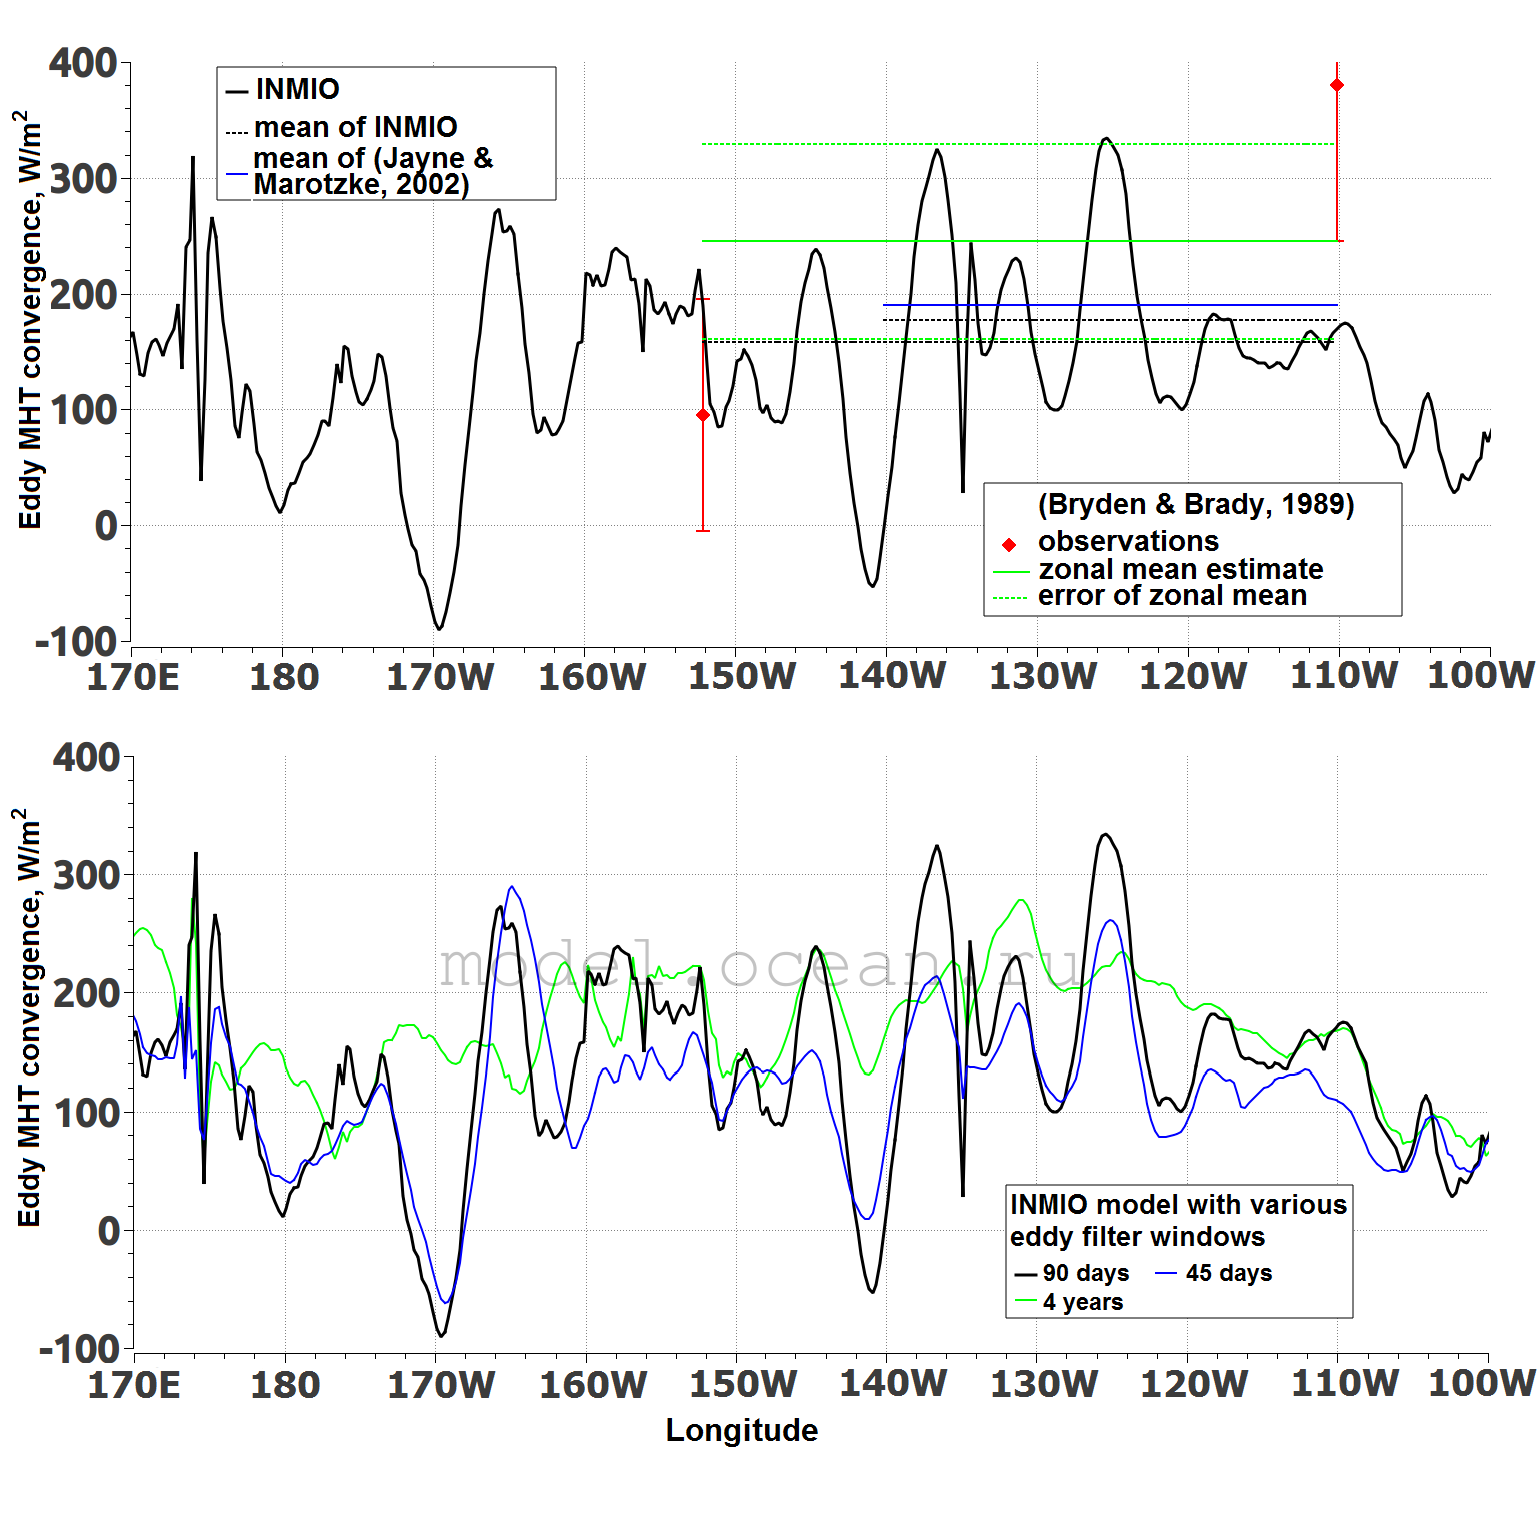 Конвергенция вихревого меридионального переноса тепла на экваторе (Вт/м²) по данным модели ИВМИО-global01 и работ (Jayne & Marotzke, 2002; Bryden & Brady, 1989). Внизу та же конвергенция по данным модели, но рассчитанная с разными периодами осреднения при выделении вихревой составляющей переноса тепла (Ushakov and Ibrayev, 2018b)